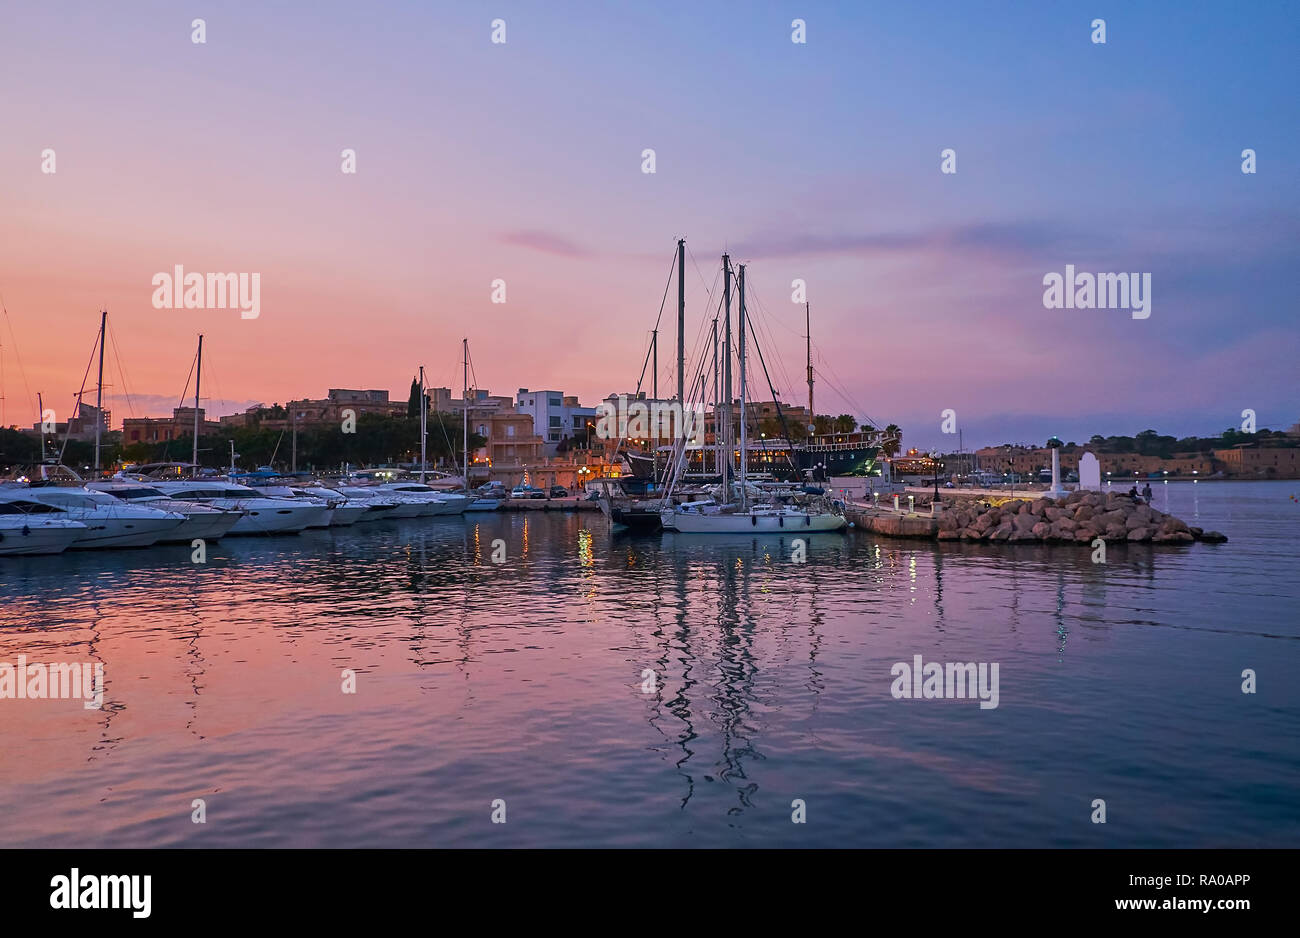 Die Werften mit angelegten Yachten in Abend Msida Yacht Marina, die violette Twilight Sky auf dem Wasser Oberfläche reflektiert, Malta. Stockfoto